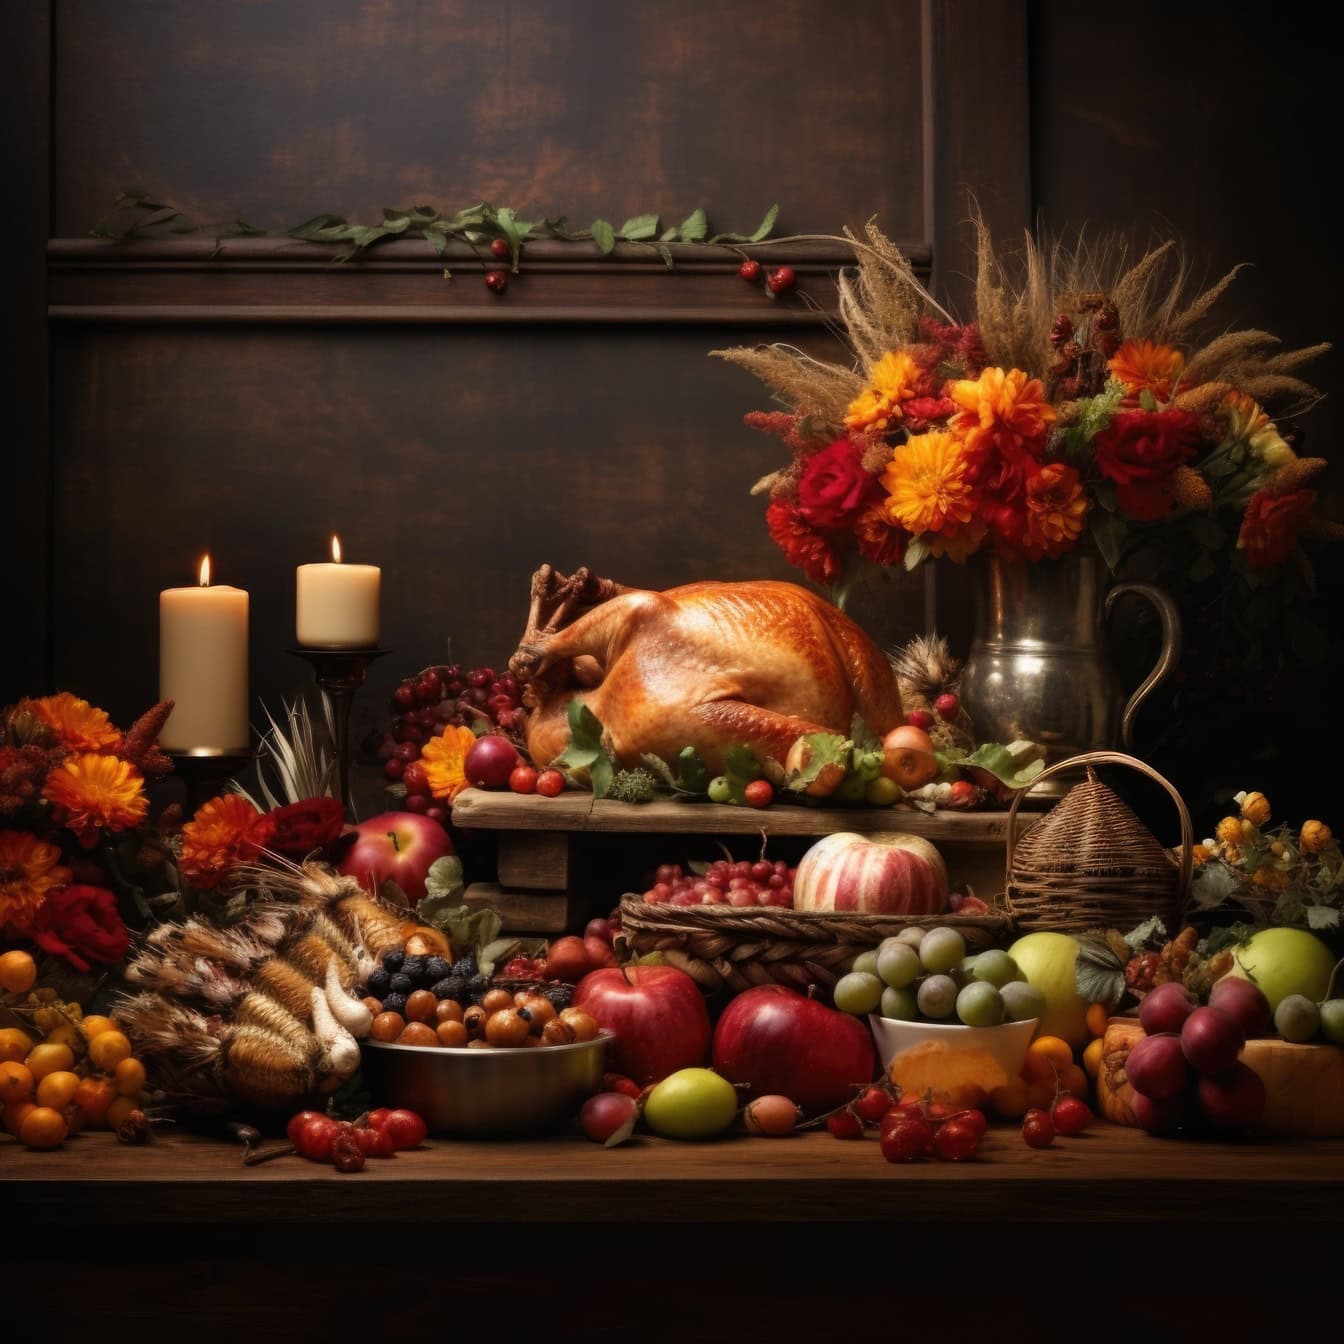 Обеденный стол на День благодарения с жареной индейкой и различными фруктами и цветами в вазе, идеальный шаблон композиции натюрморта